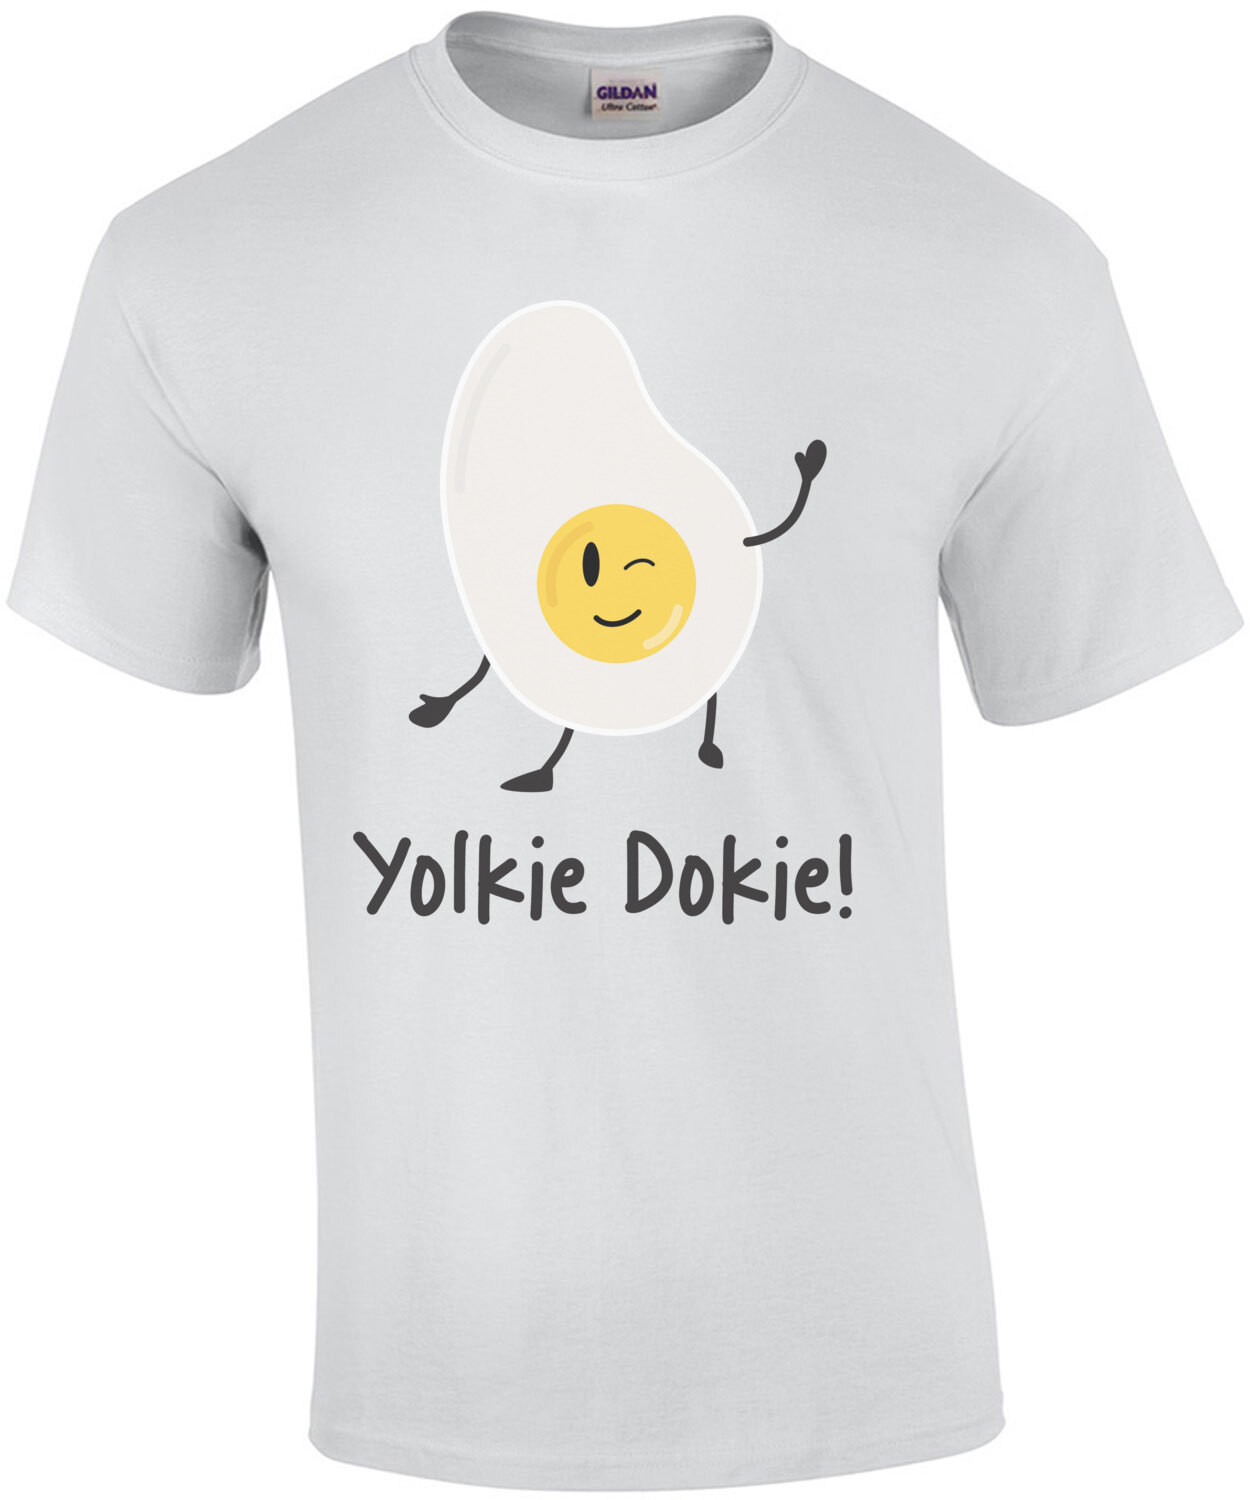 Yolkie Dokie! Funny egg pun t-shirt